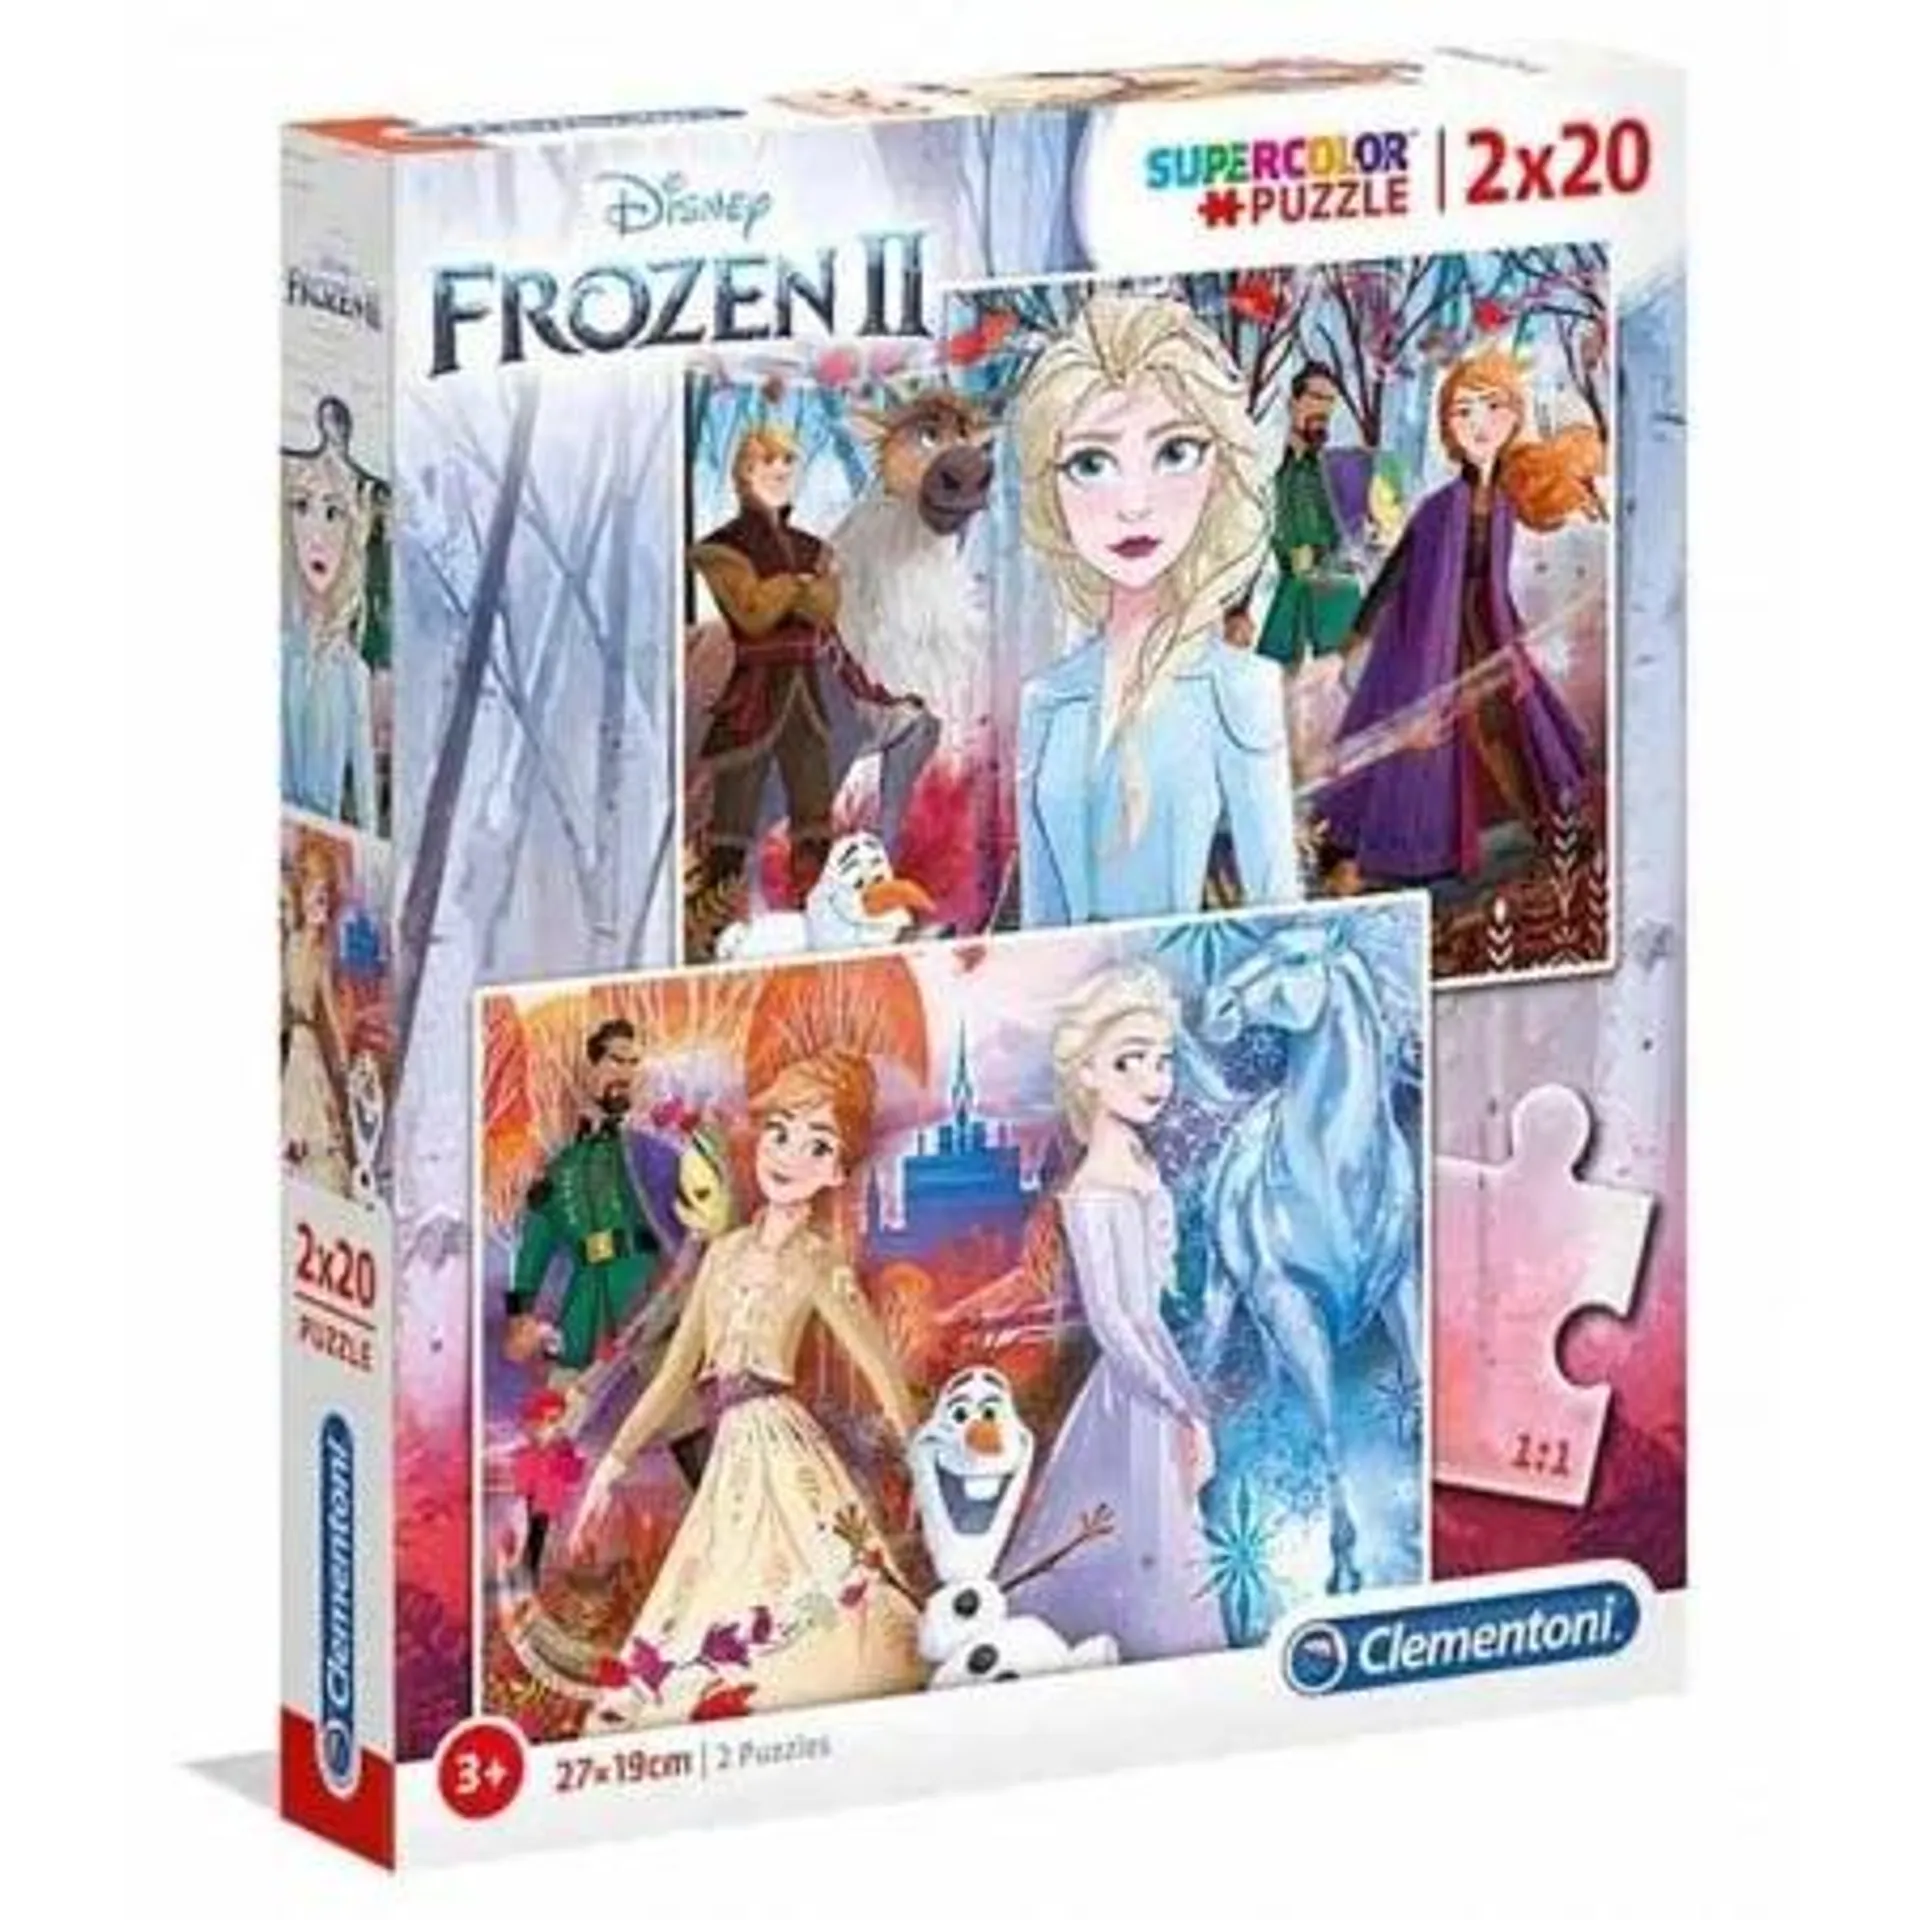 Puzzle 2x20 Peças Disney Frozen II